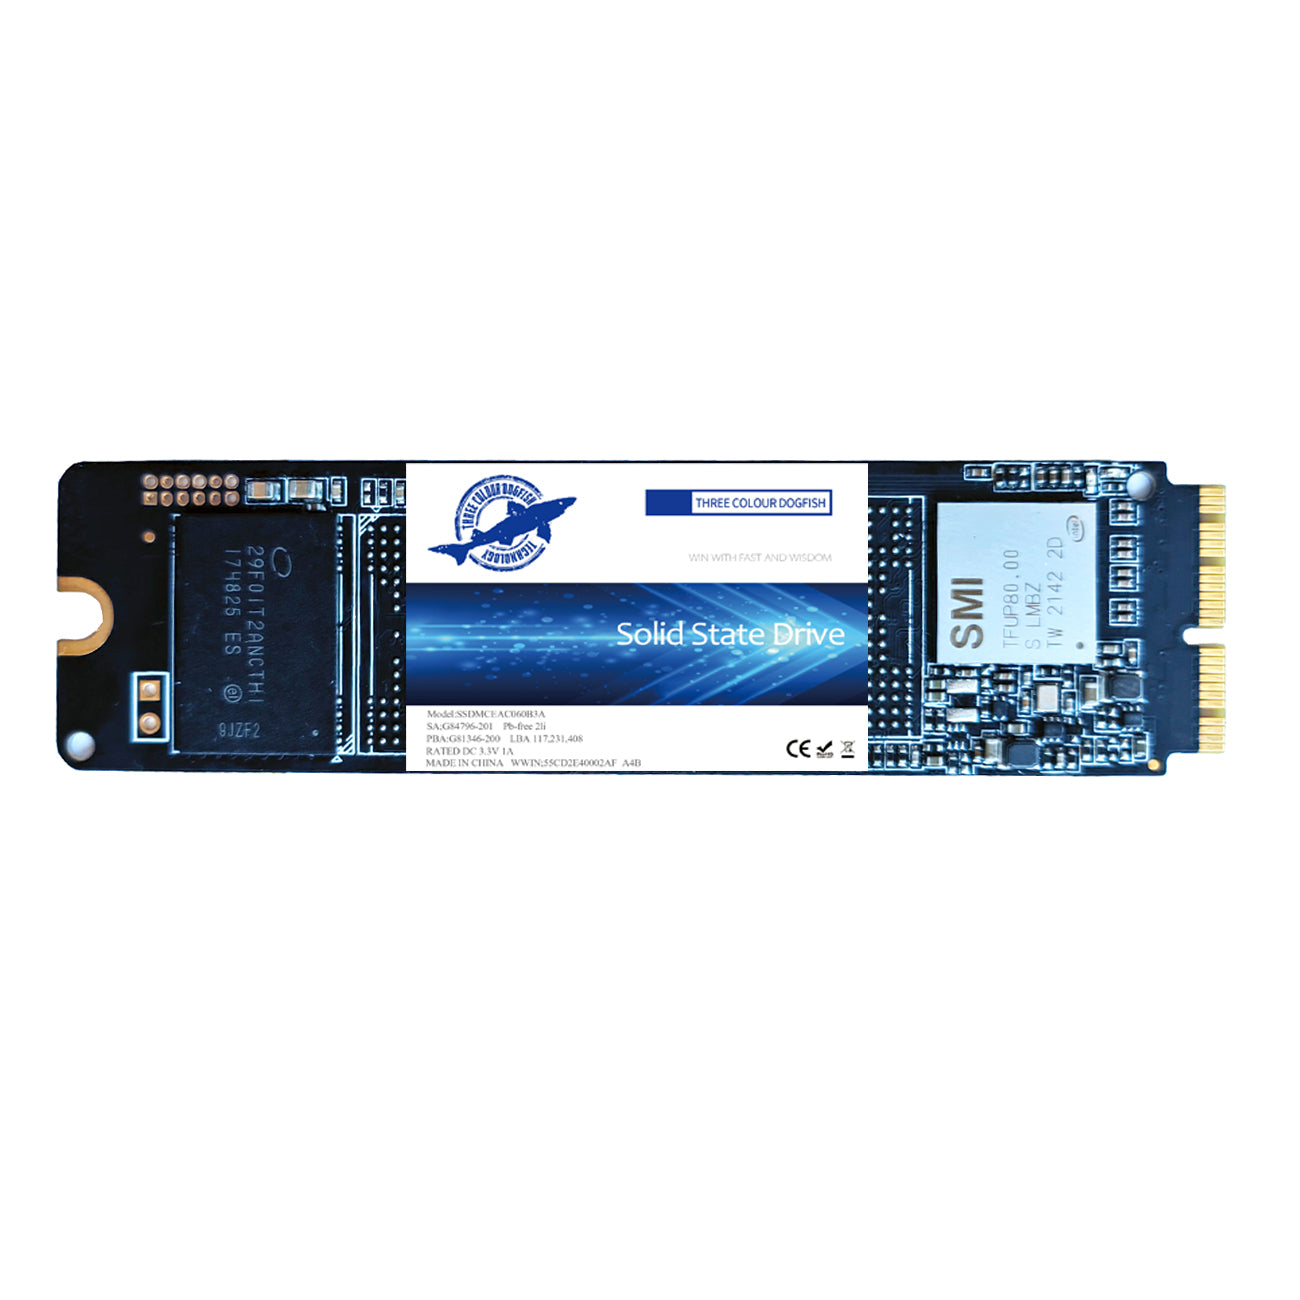 Samsung Galaxy Note スクリーン交換品(フレームなし) Note 2017 SM-N9500 N950F N950F DS W U LCDディスプレイ タッチスクリーンデジタイザーアセンブリパ - 2